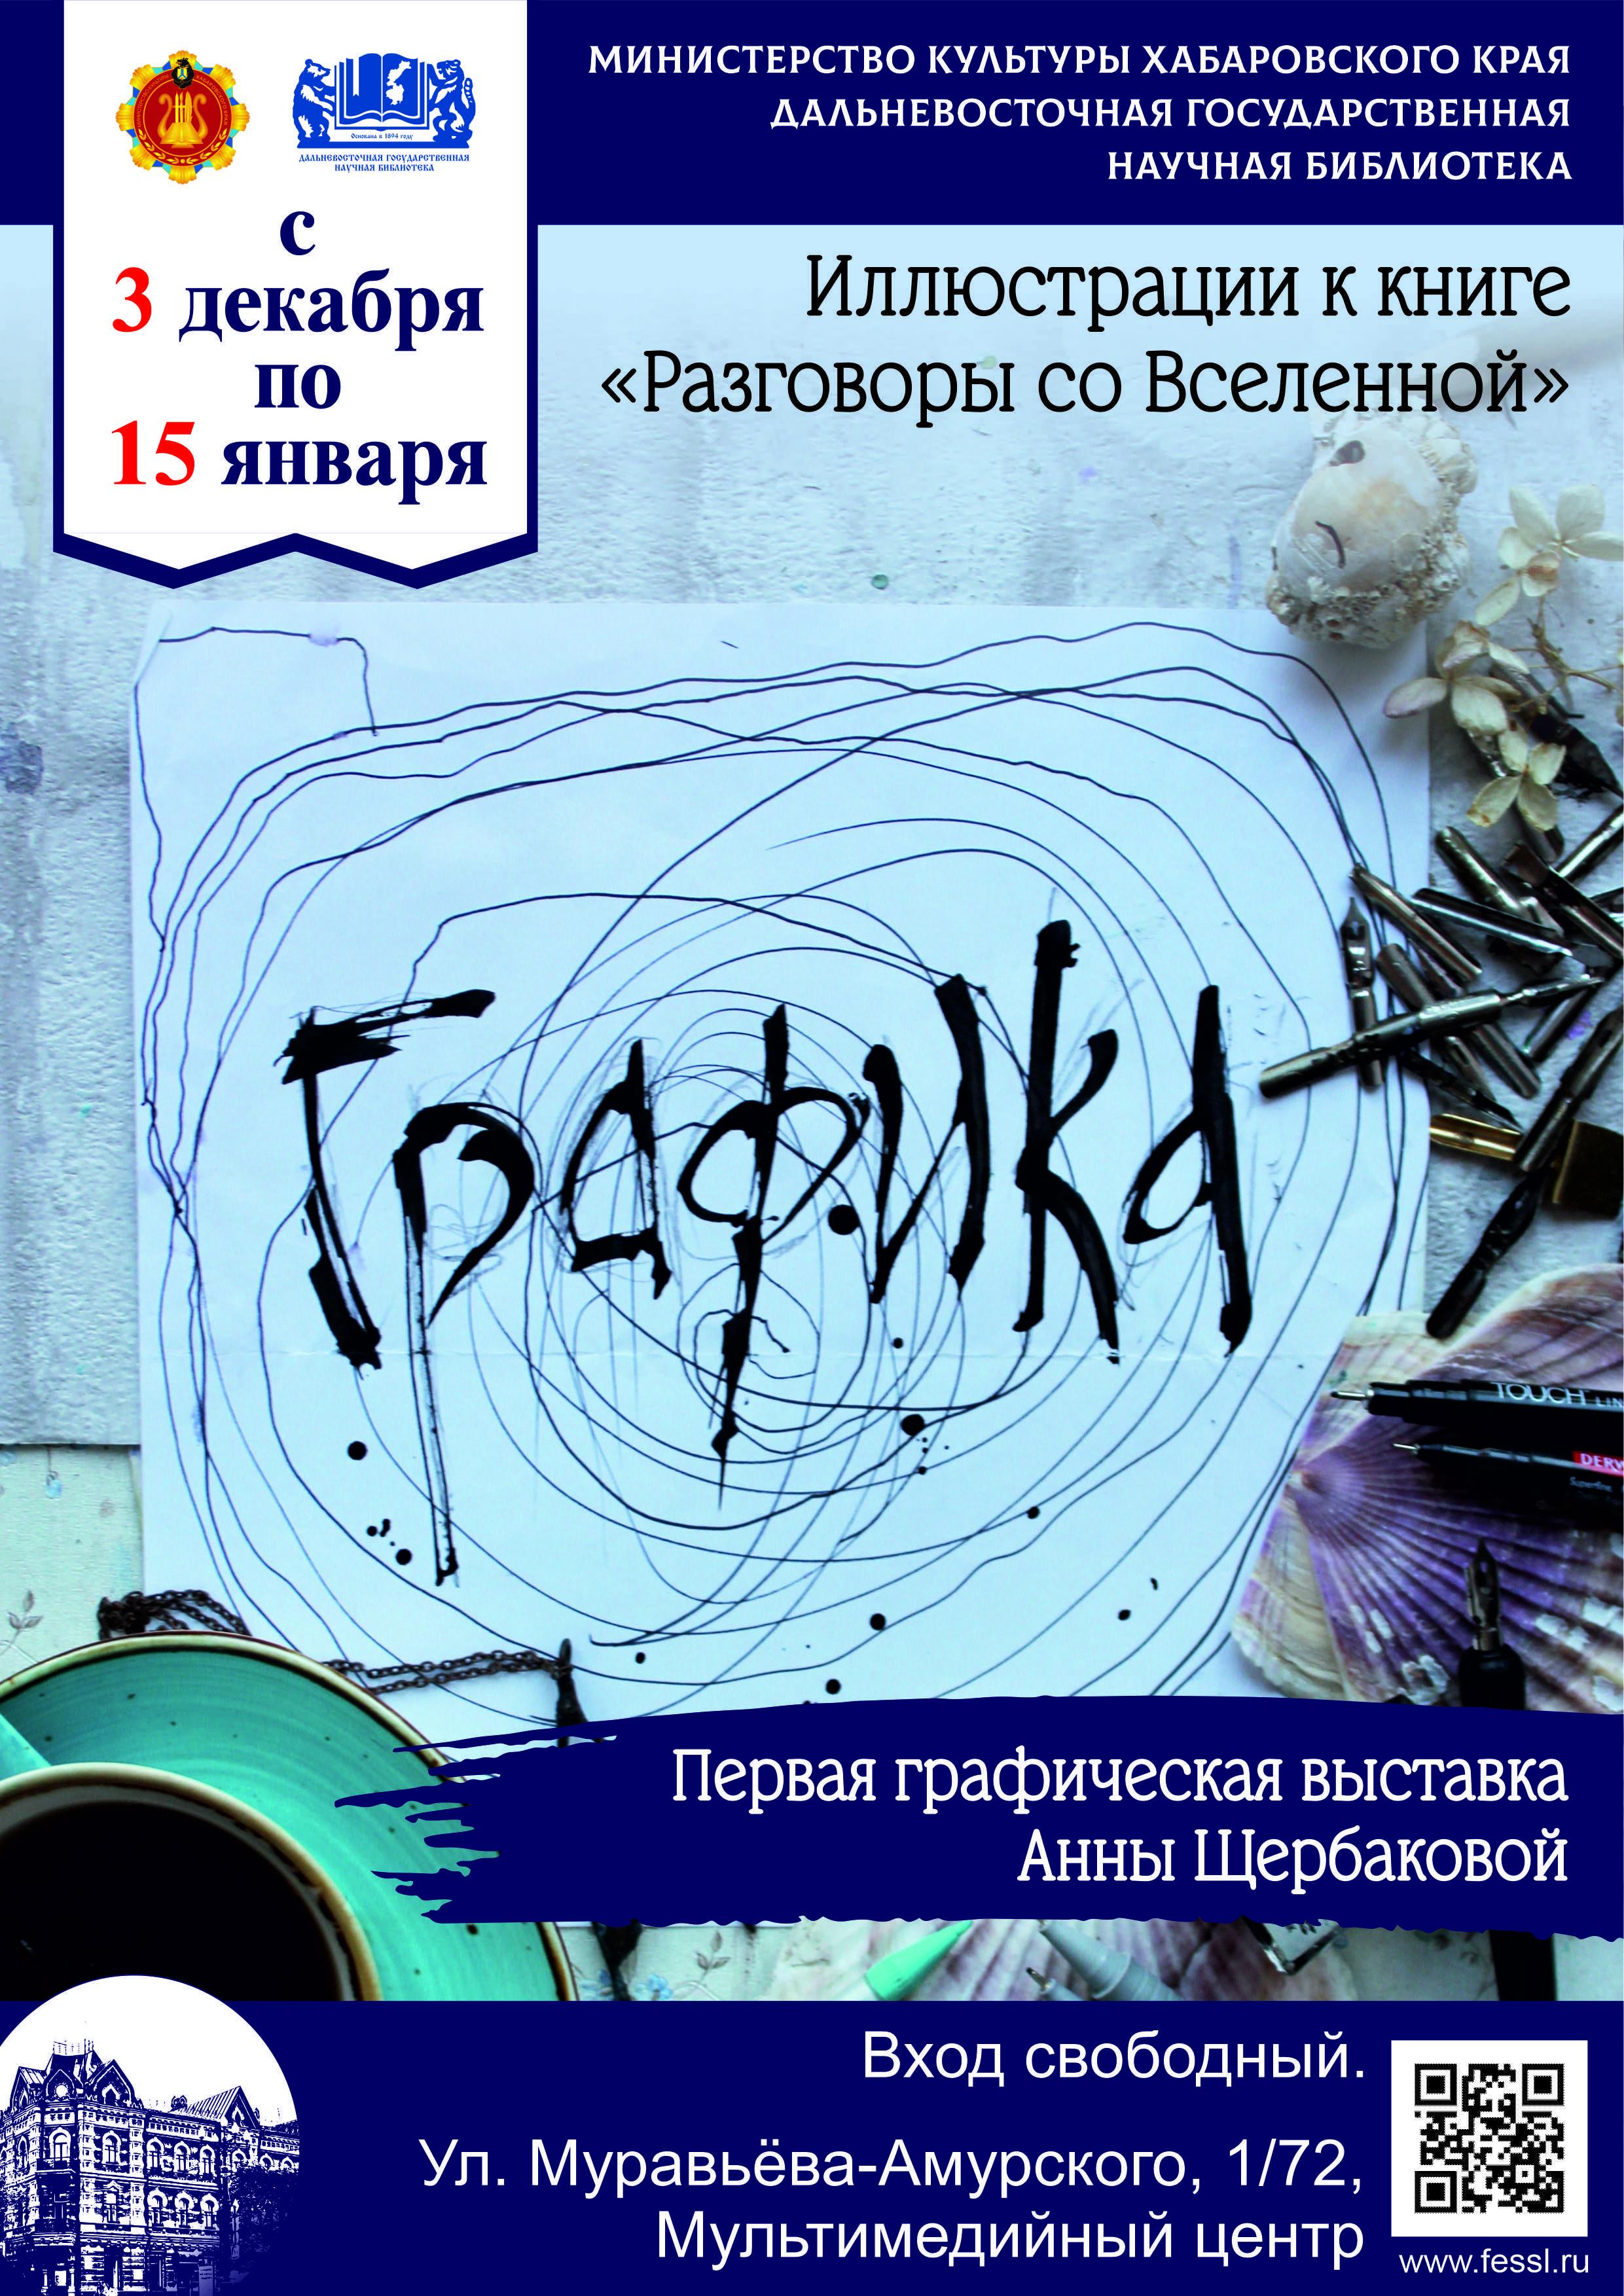 Первая графическая выставка Анны Щербаковой «ГРАФИКА».